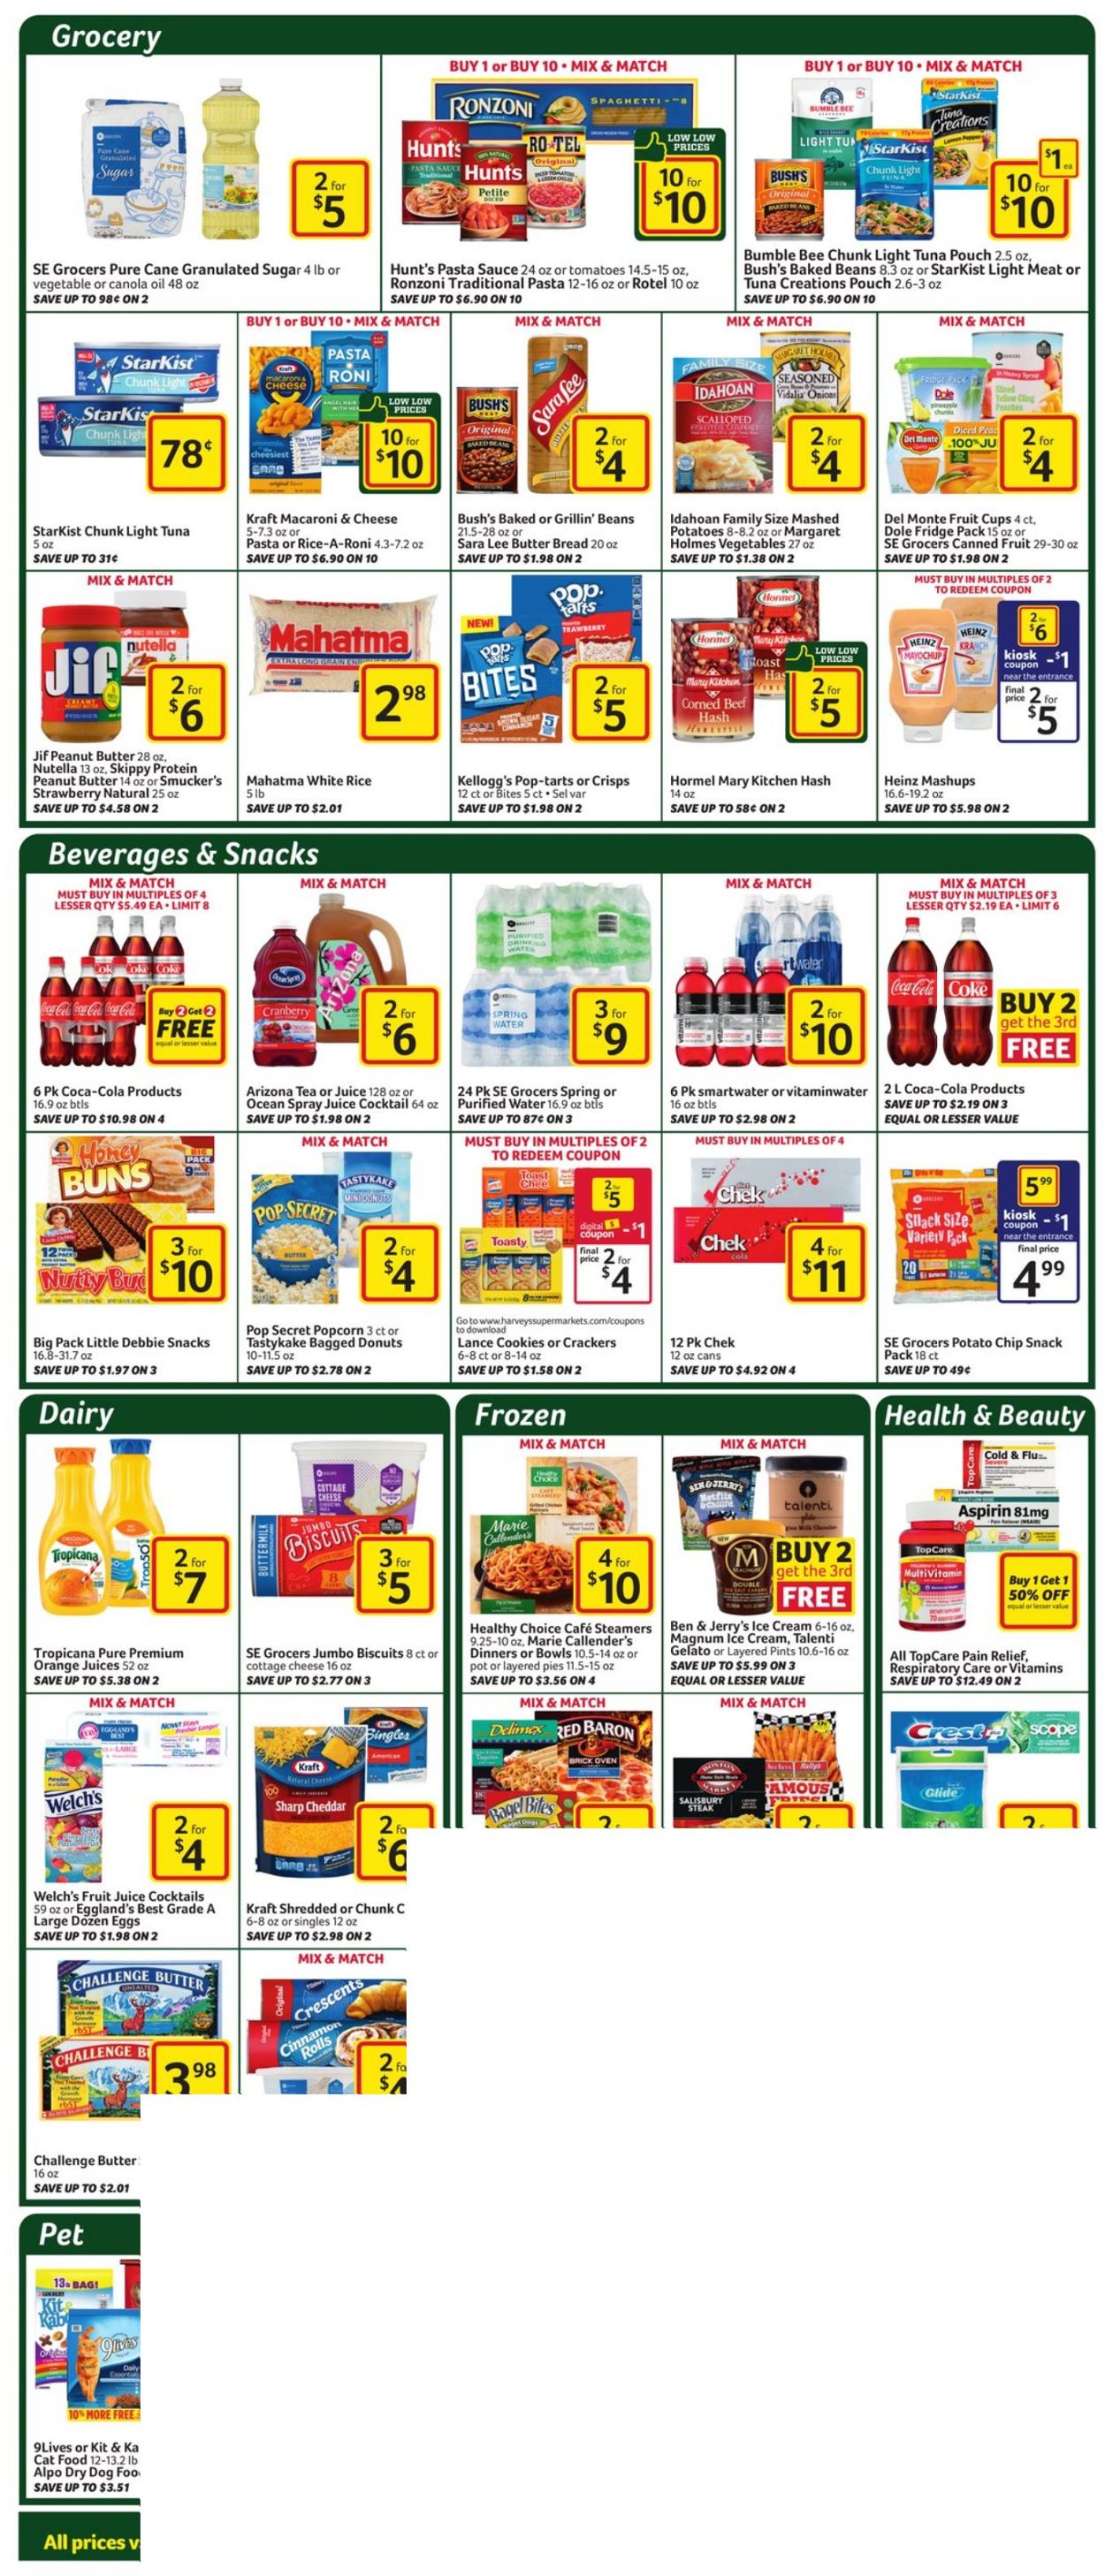 Catalogue Harveys Supermarket from 02/24/2021